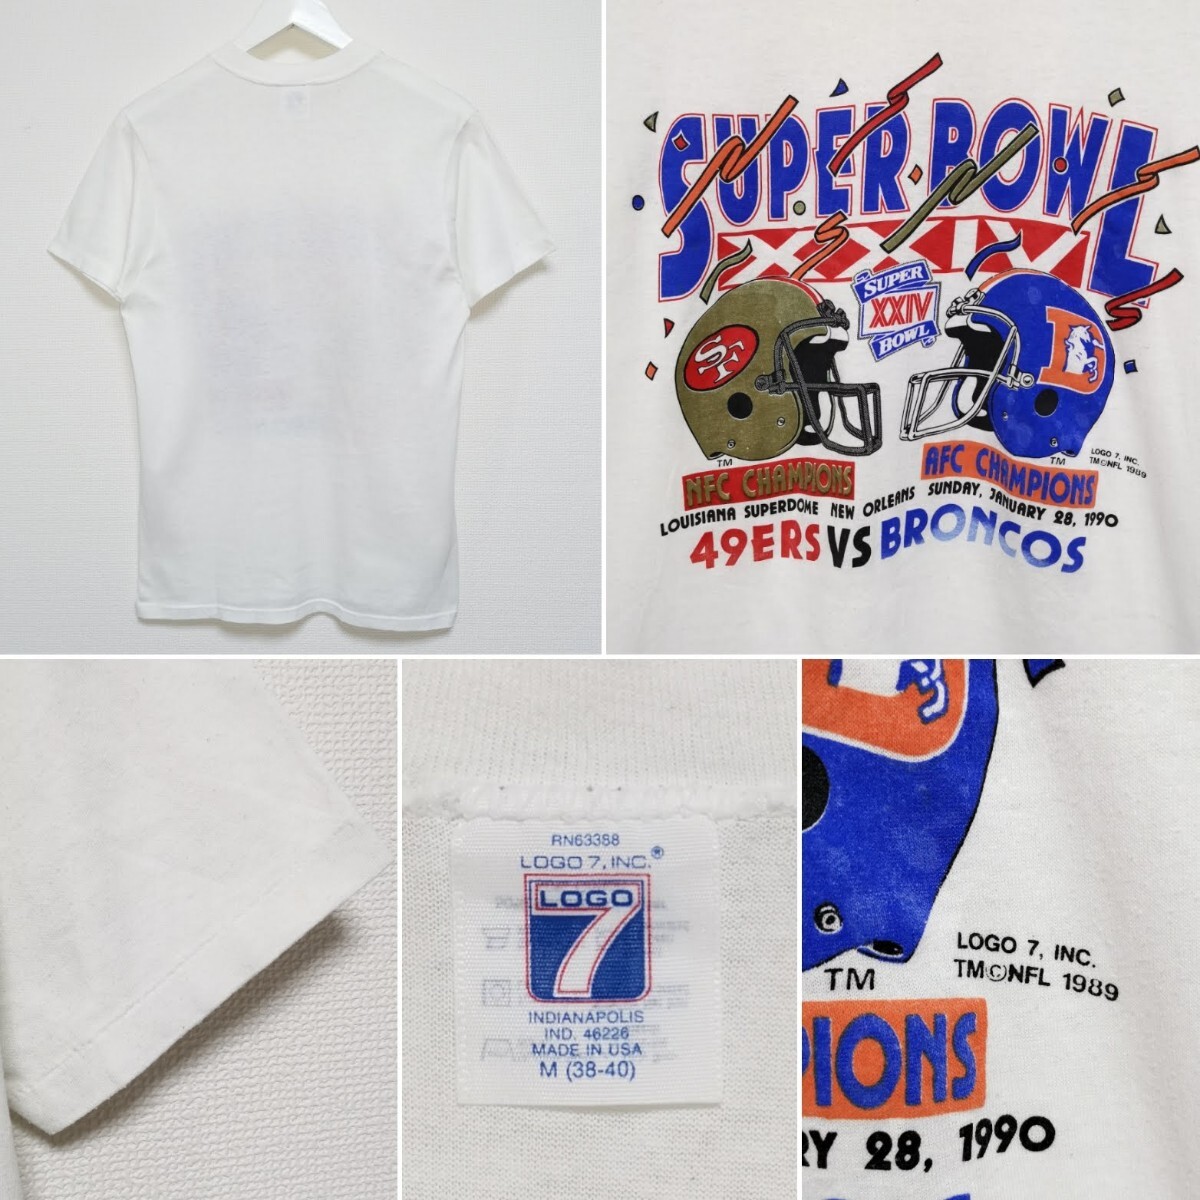 即決 M 80s 49ers vs Broncos Super Bowl Tシャツ LOGO7 NFL VINTAGE USA製_画像2